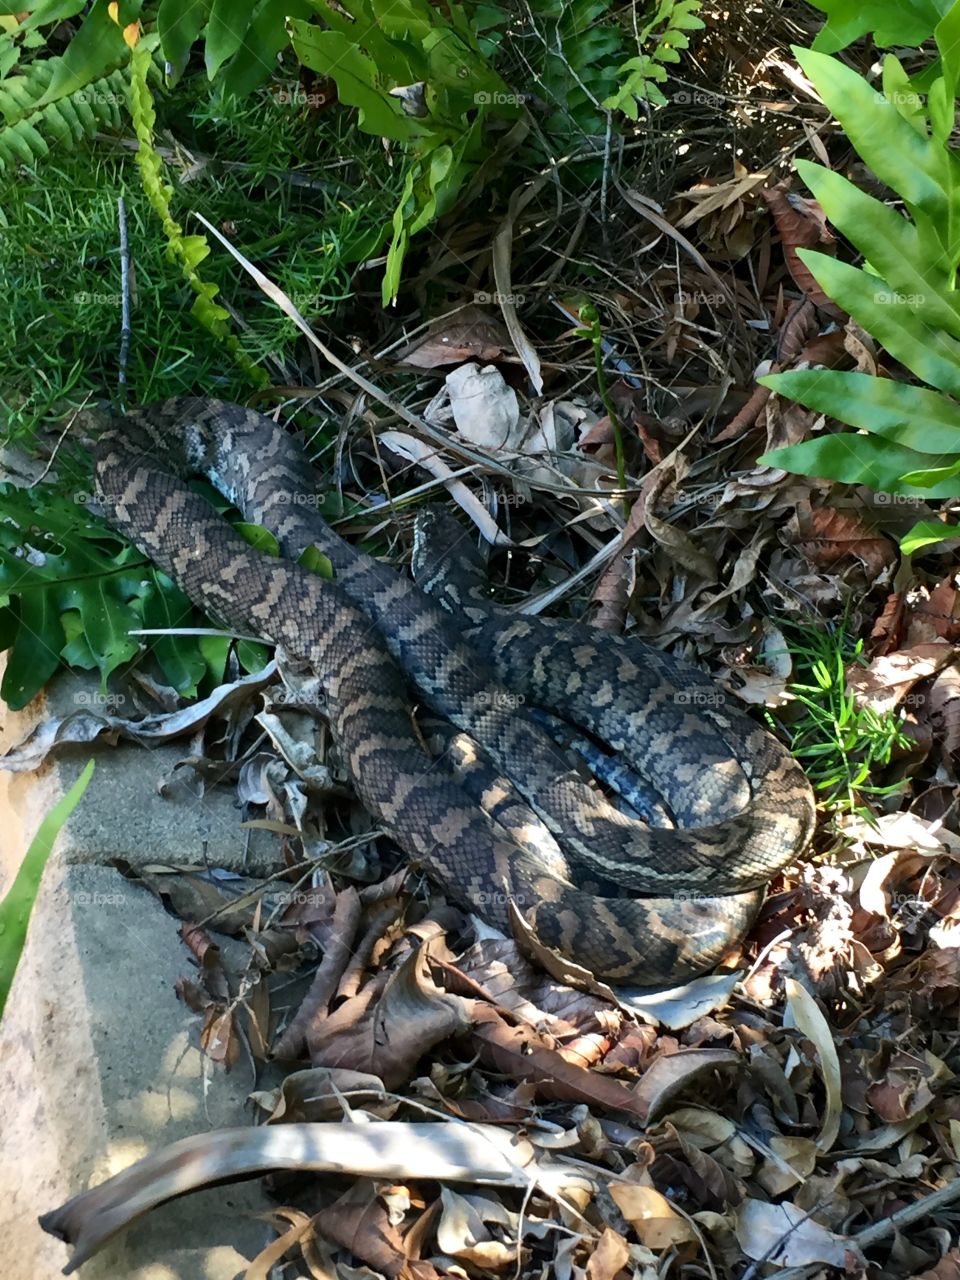 Python in yard